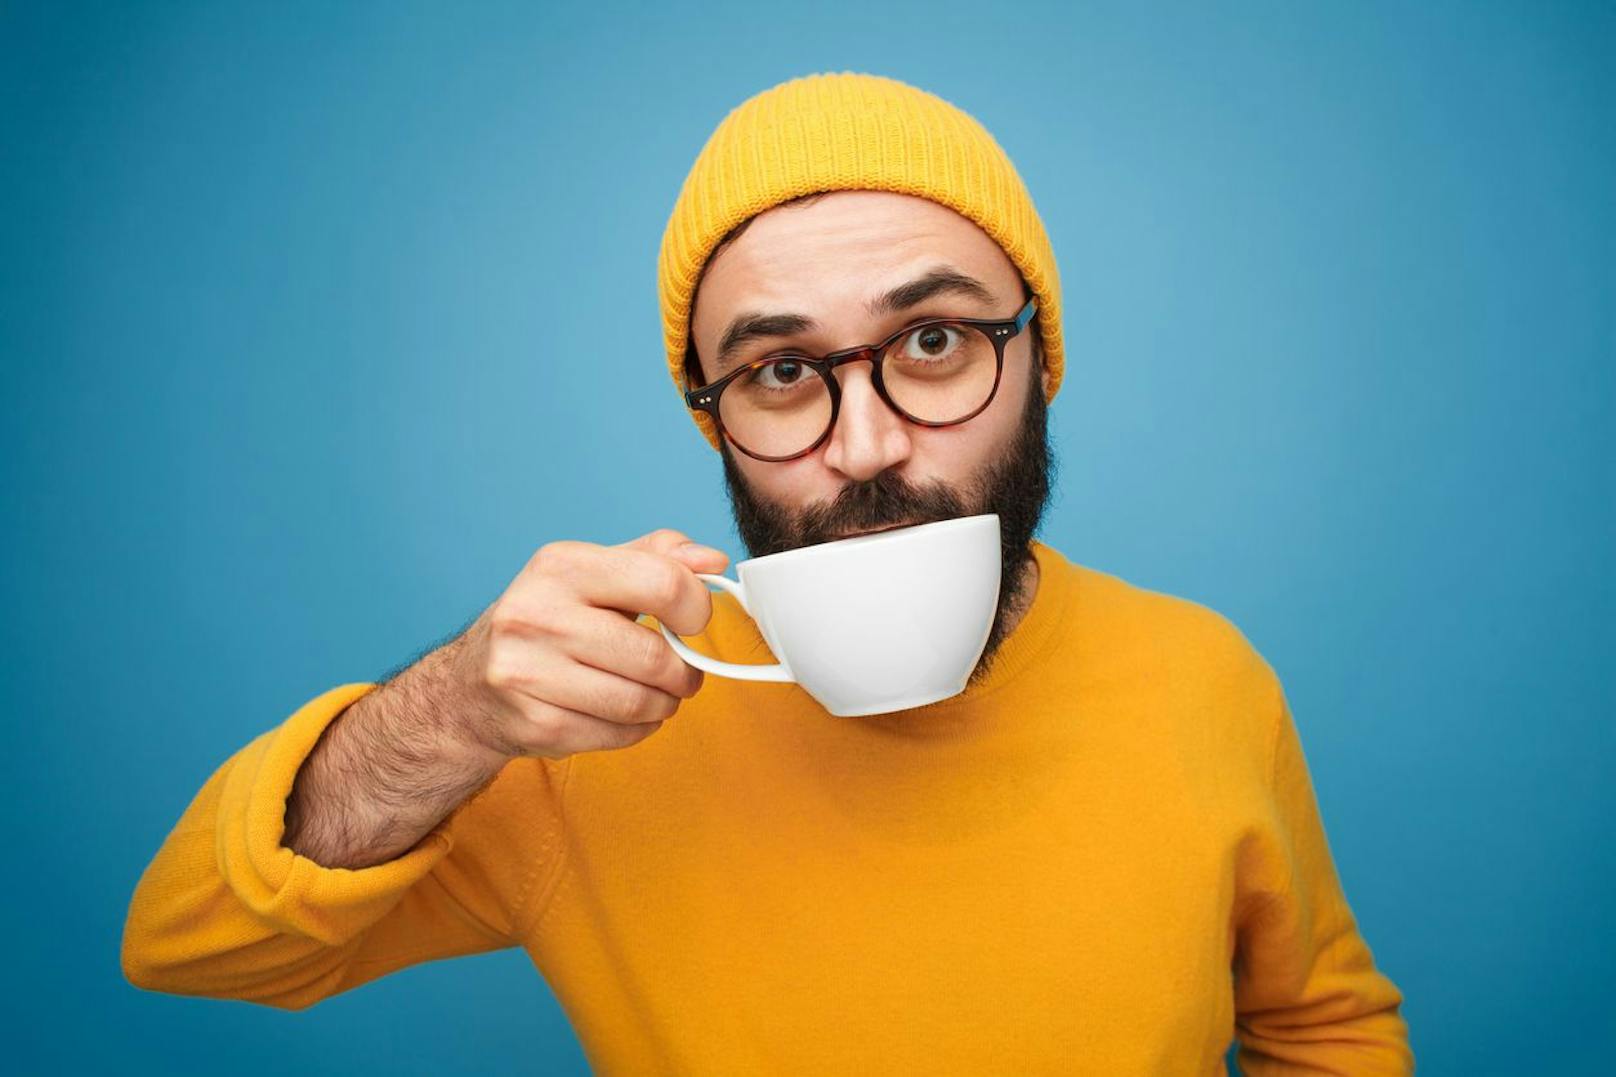 Sobald dein Kaffee lauwarm ist kannst du den Zitronensaft hinzufügen. Verwende keinen heißen Kaffee, da das Vitamin C und weitere Nährstoffe ansonsten in der Hitze verloren gehen.